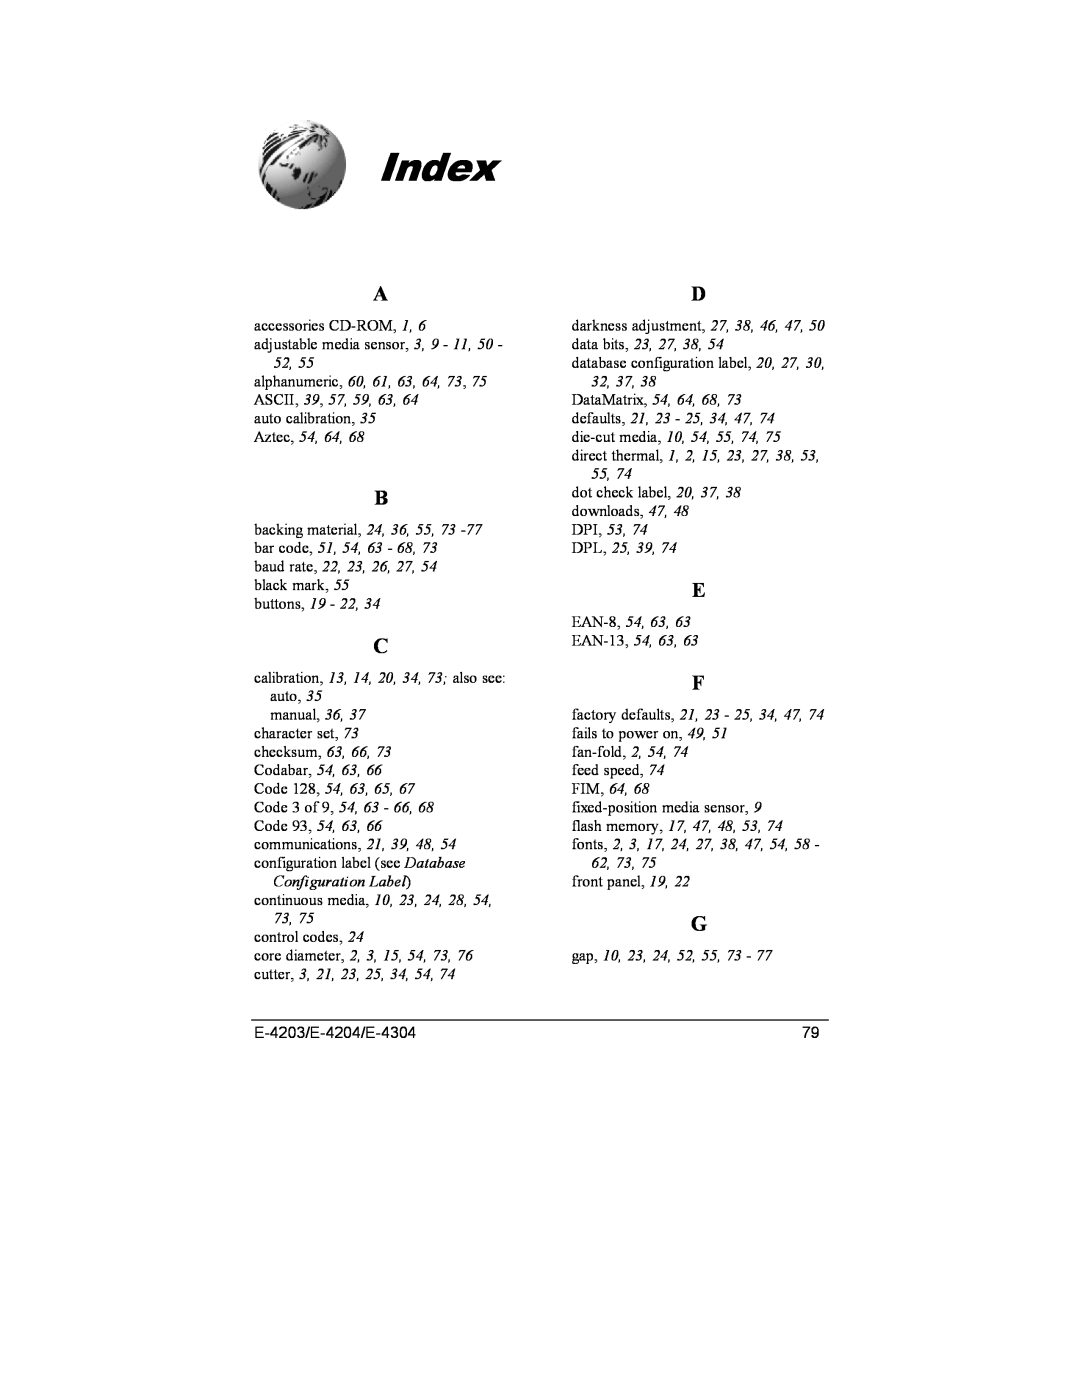 Datamax E-4304e, E-4203, E-4204 manual Index 